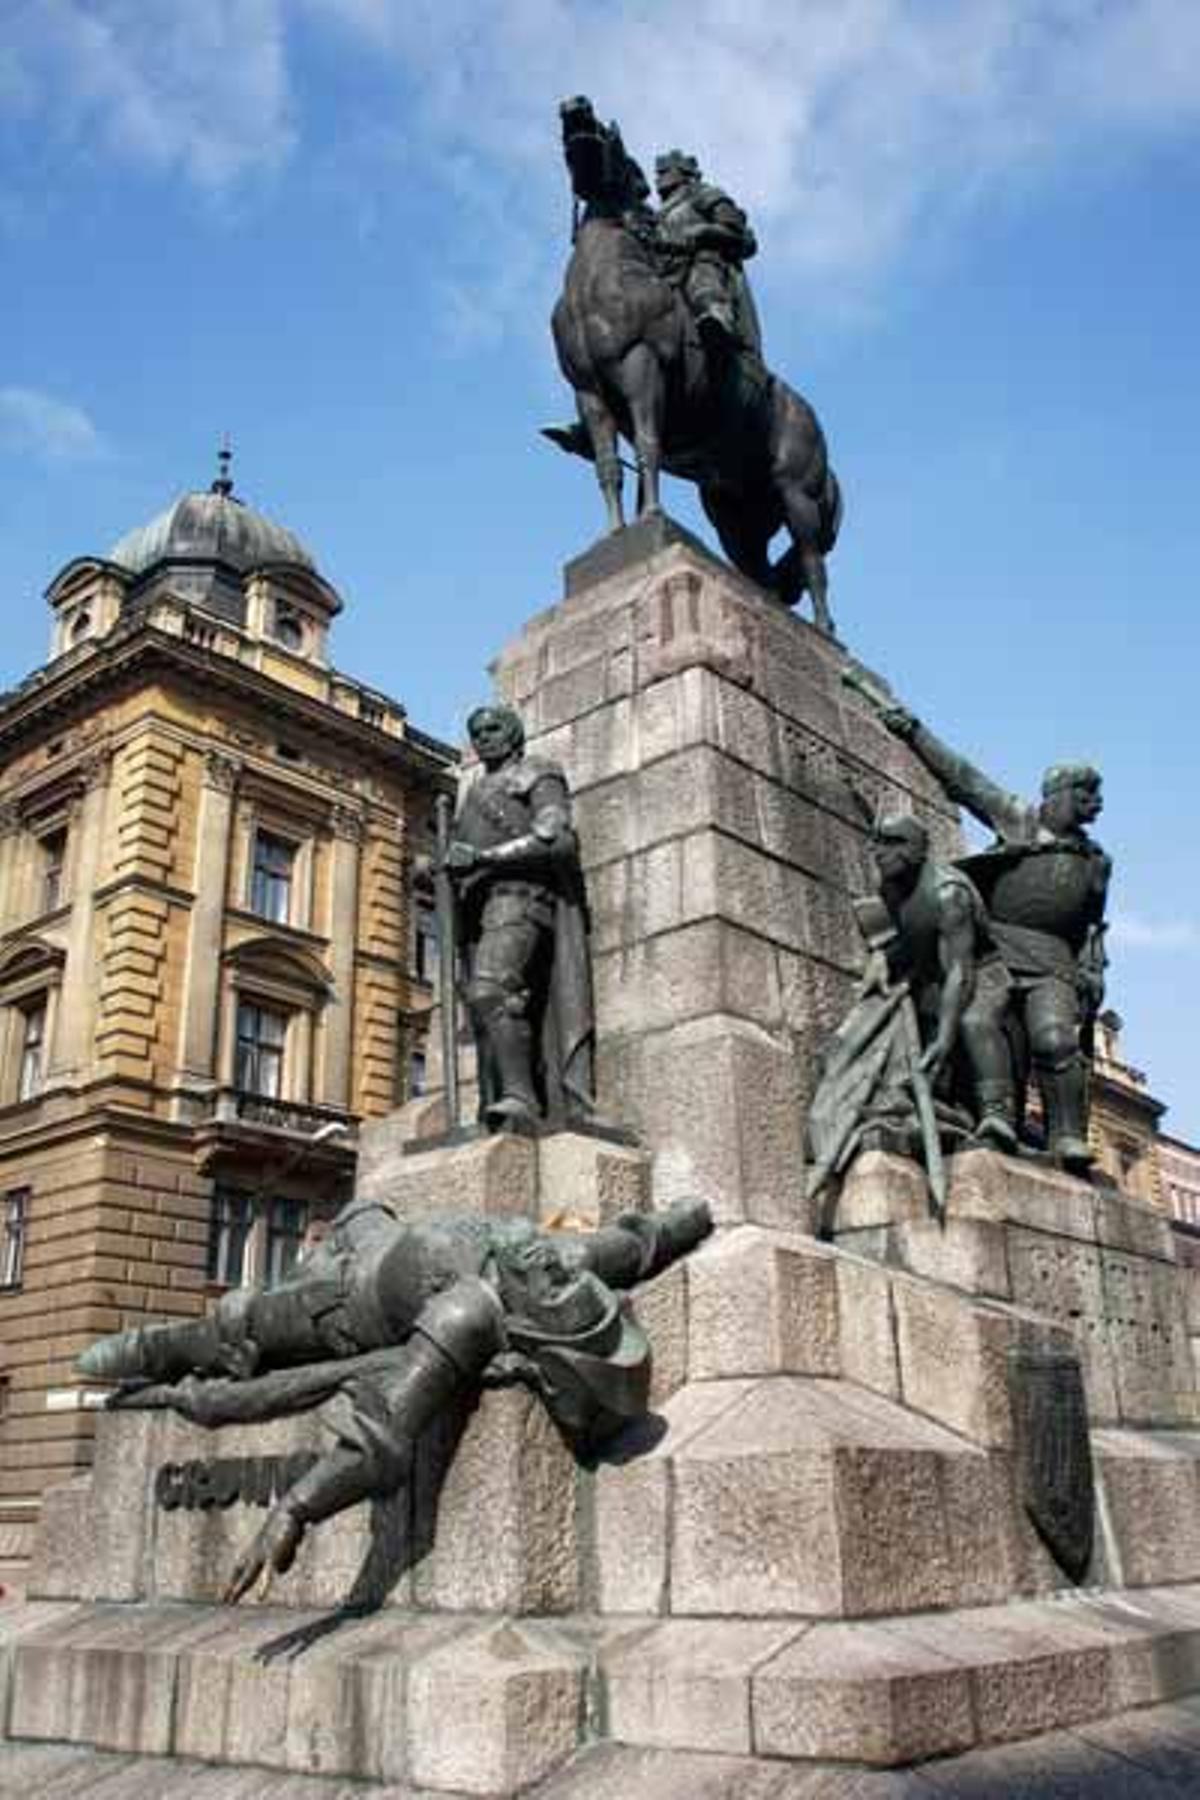 El monumento a la batalla Grunwald fue reconstruido por Marian Konieczny en los '70 ya que el origianl de Antoni Wiwulski fue destuido por los nazis en la II Guerra Mundial.